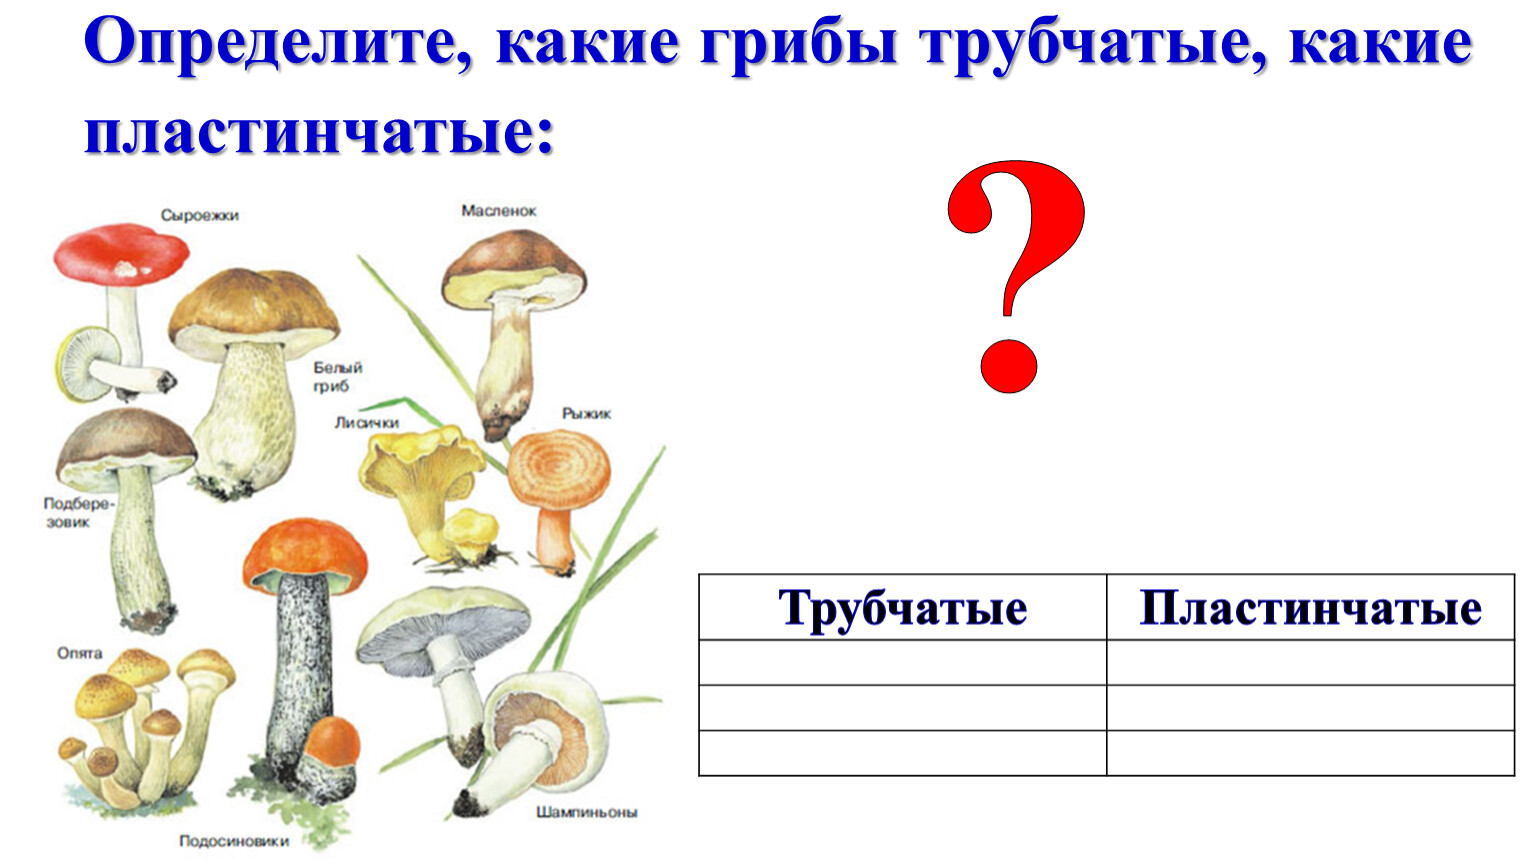 Пластинчатые грибы примеры. Трубчатые грибы. Масленок трубчатый или пластинчатый гриб. Трубчатые и пластинчатые грибы примеры. Трубчатые грибы и пластинчатые грибы примеры